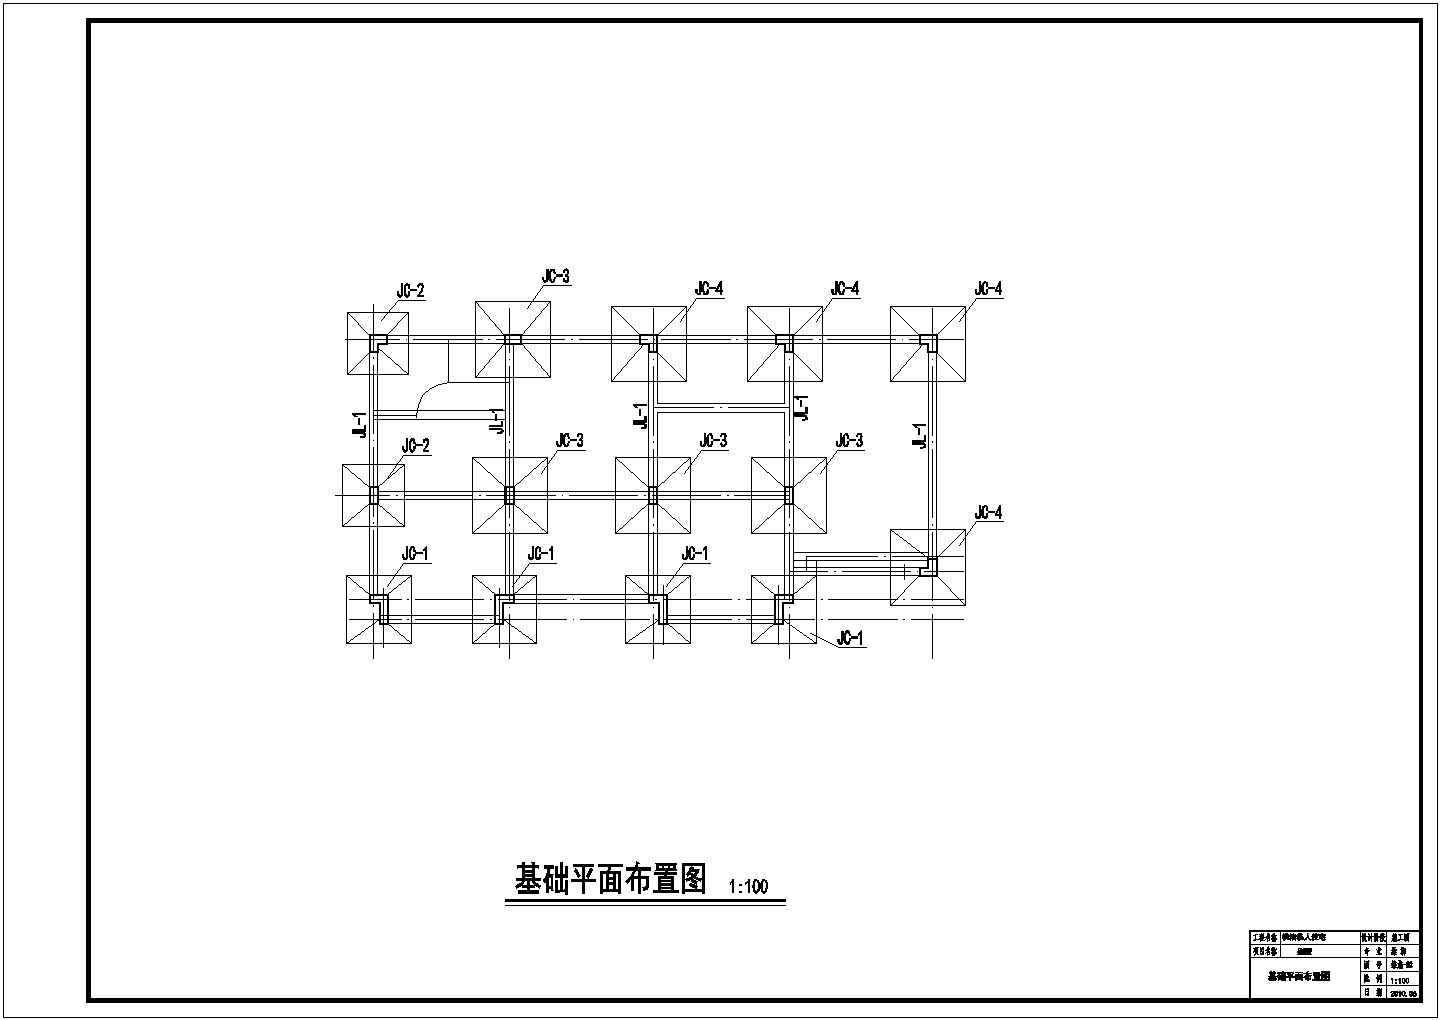 荆州市某村镇3层砖混结构乡村别墅全套结构设计CAD图纸